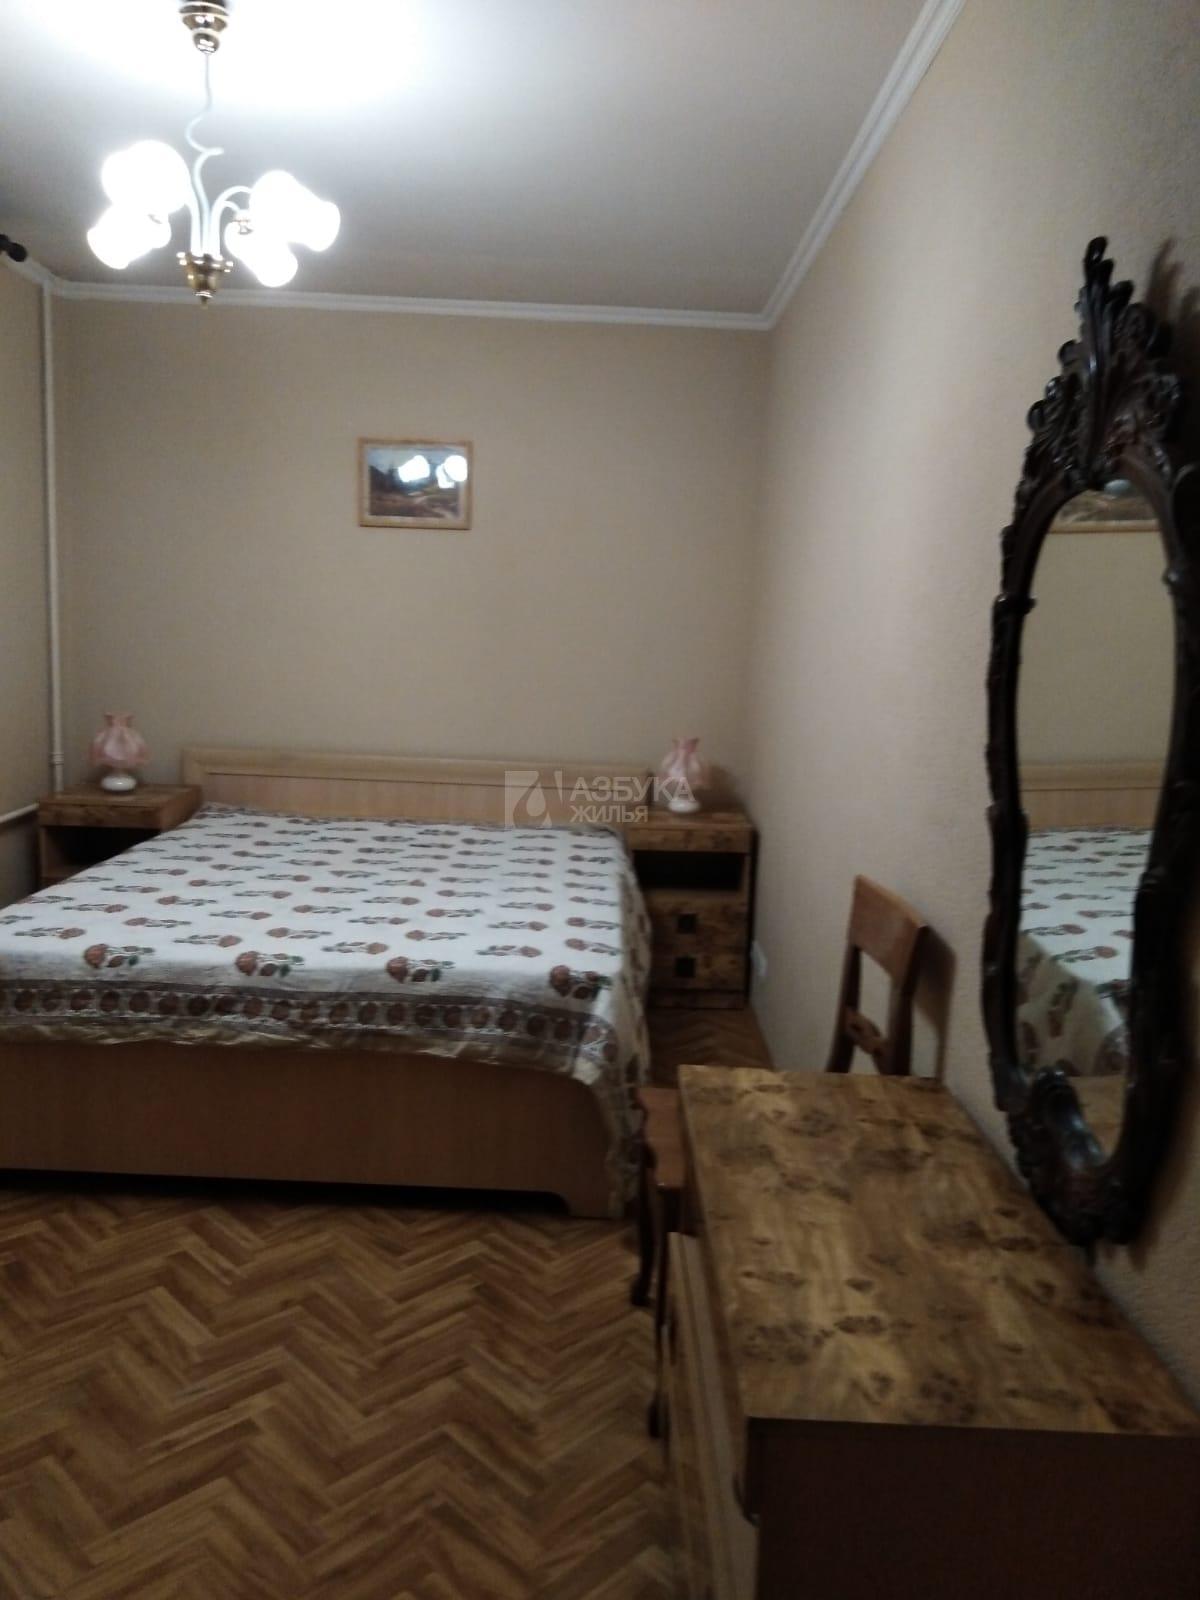 2-комнатная квартира, Москва, Малая Калитниковская улица 20 корпус 1 , фото №